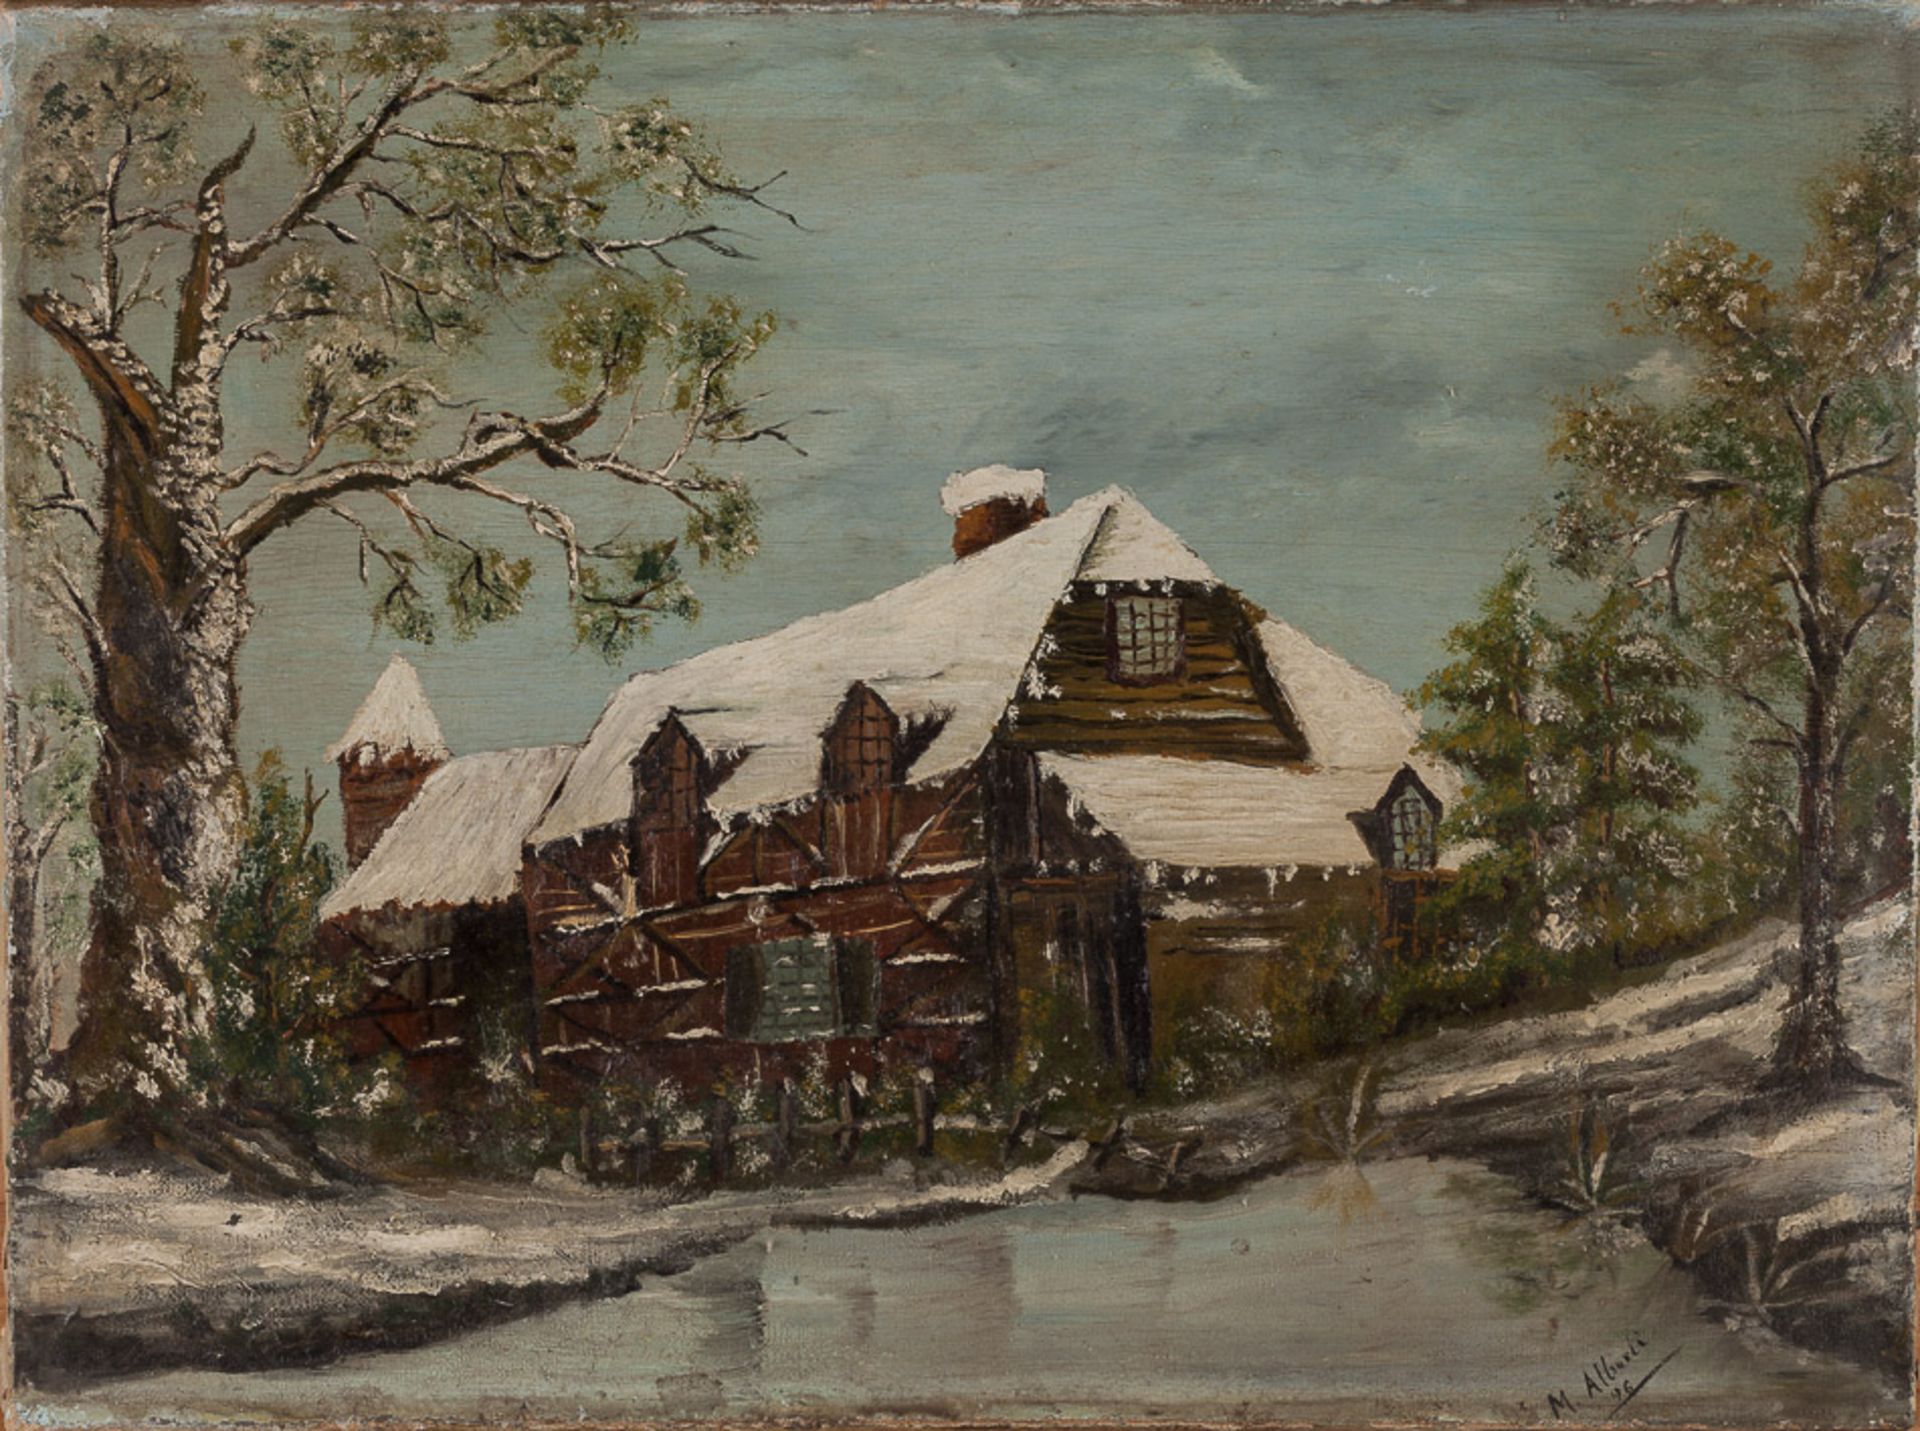 M.Alberti 19./20. Jhd."Gehöft im Winter"
Gemälde Öl/Leinwand, 30 cm x 40 cm,
ungerahmt, rechts unten